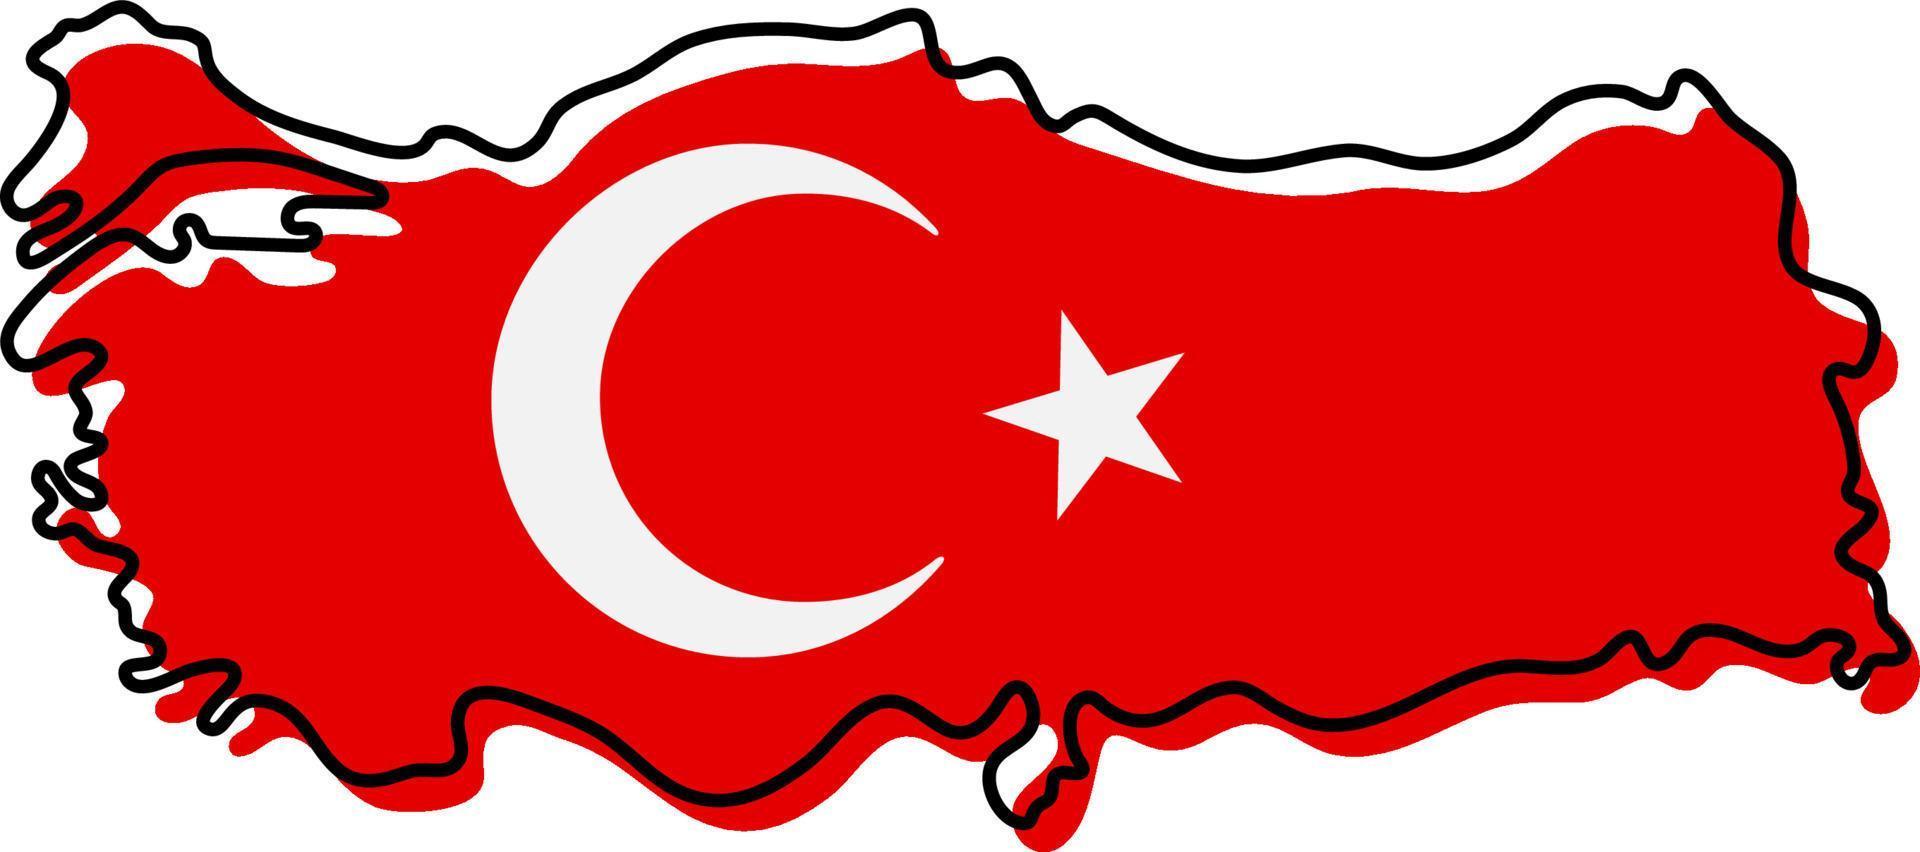 stiliserade kontur karta över Turkiet med flaggikonen. flagga färg karta över Turkiet vektor illustration.